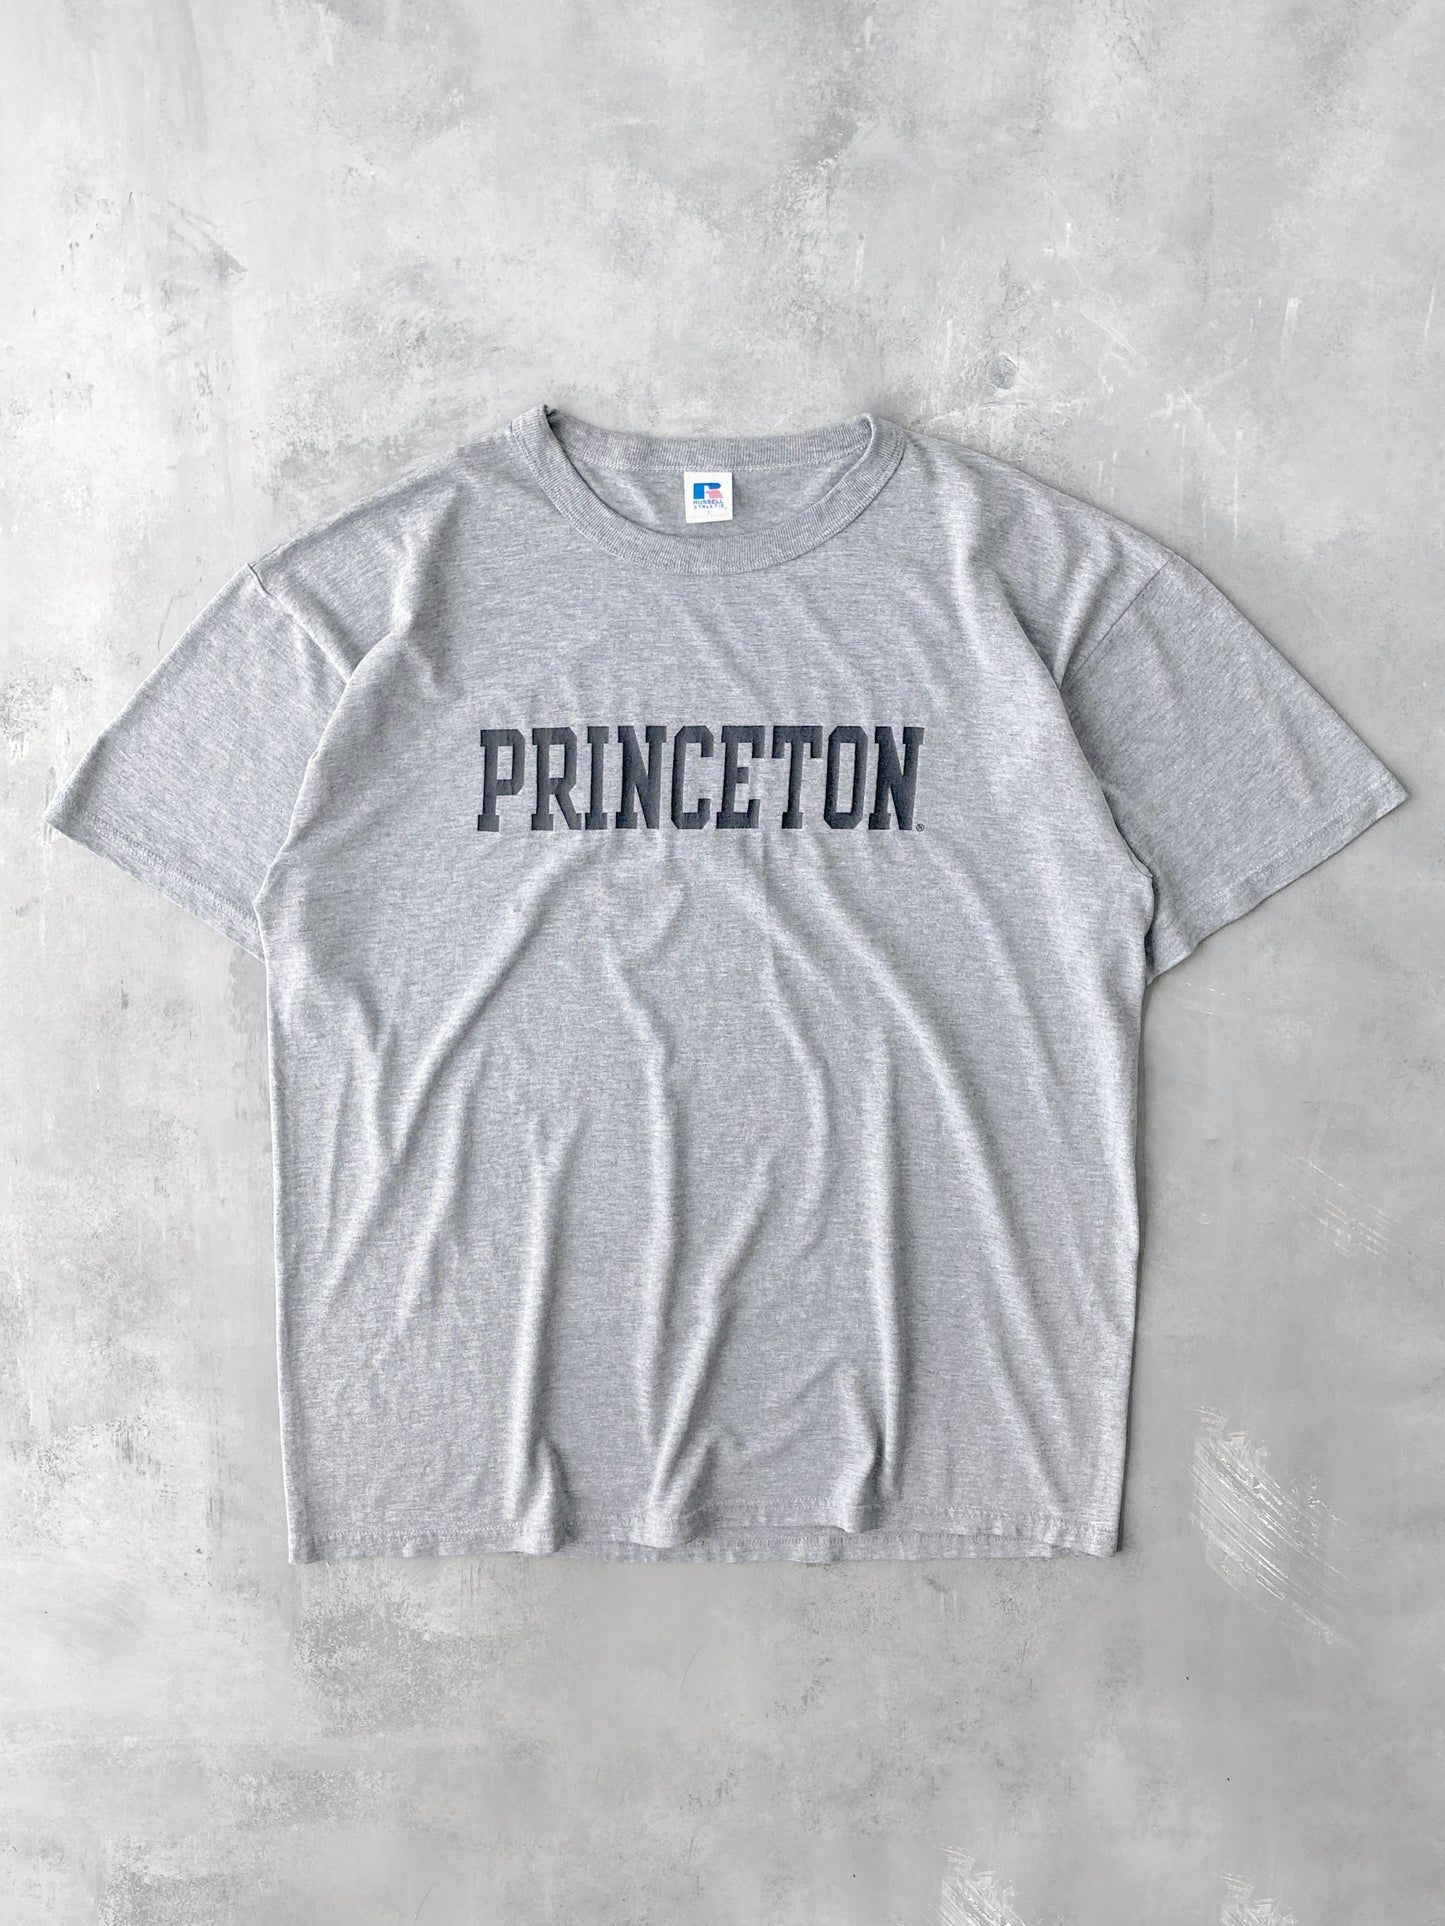 Princeton University T-Shirt 00's - XL